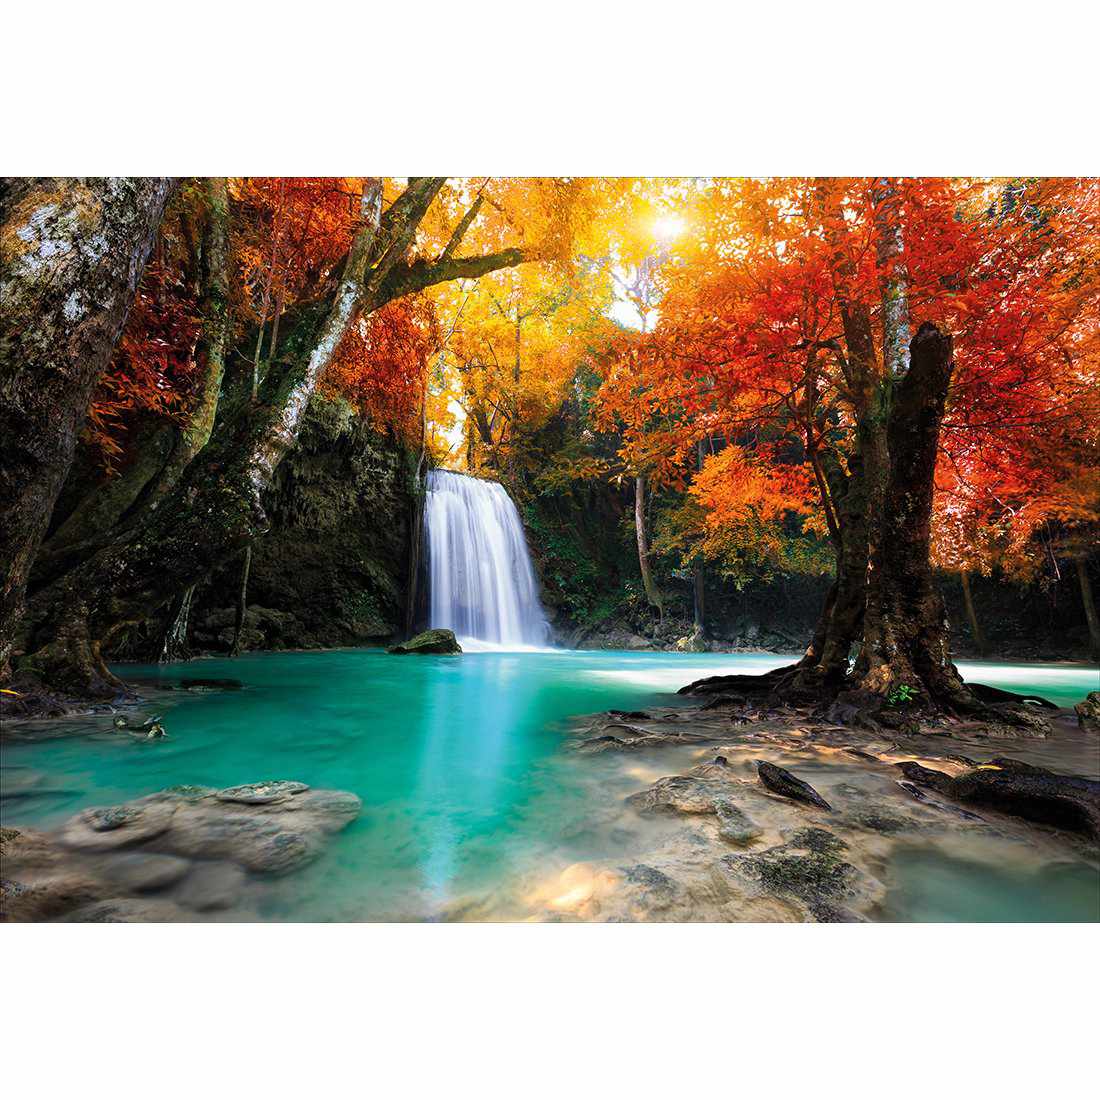 Autumn Waterfall Magic Canvas Art-Canvas-Wall Art Designs-45x30cm-Canvas - No Frame-Wall Art Designs